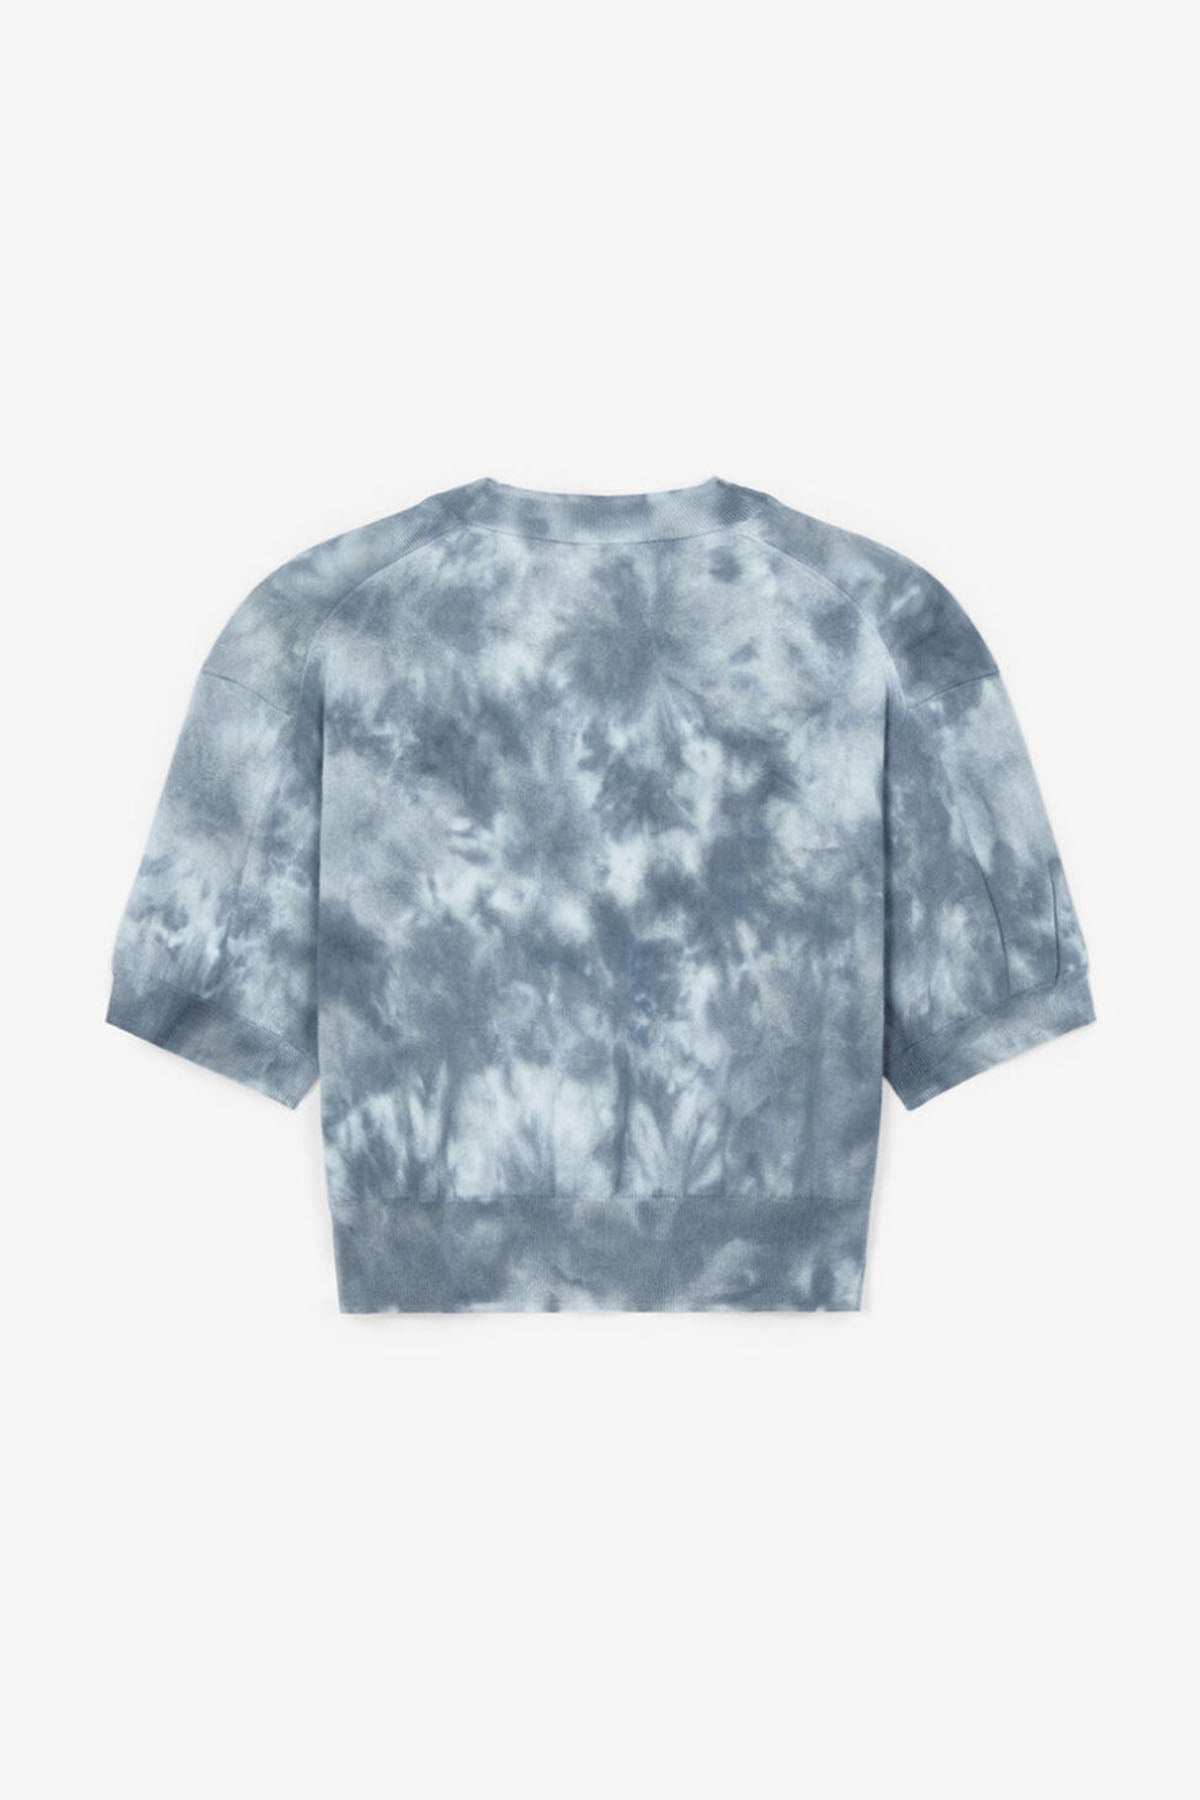 Kenzo Kaplan Logolu Batik Triko T-shirt-Libas Trendy Fashion Store